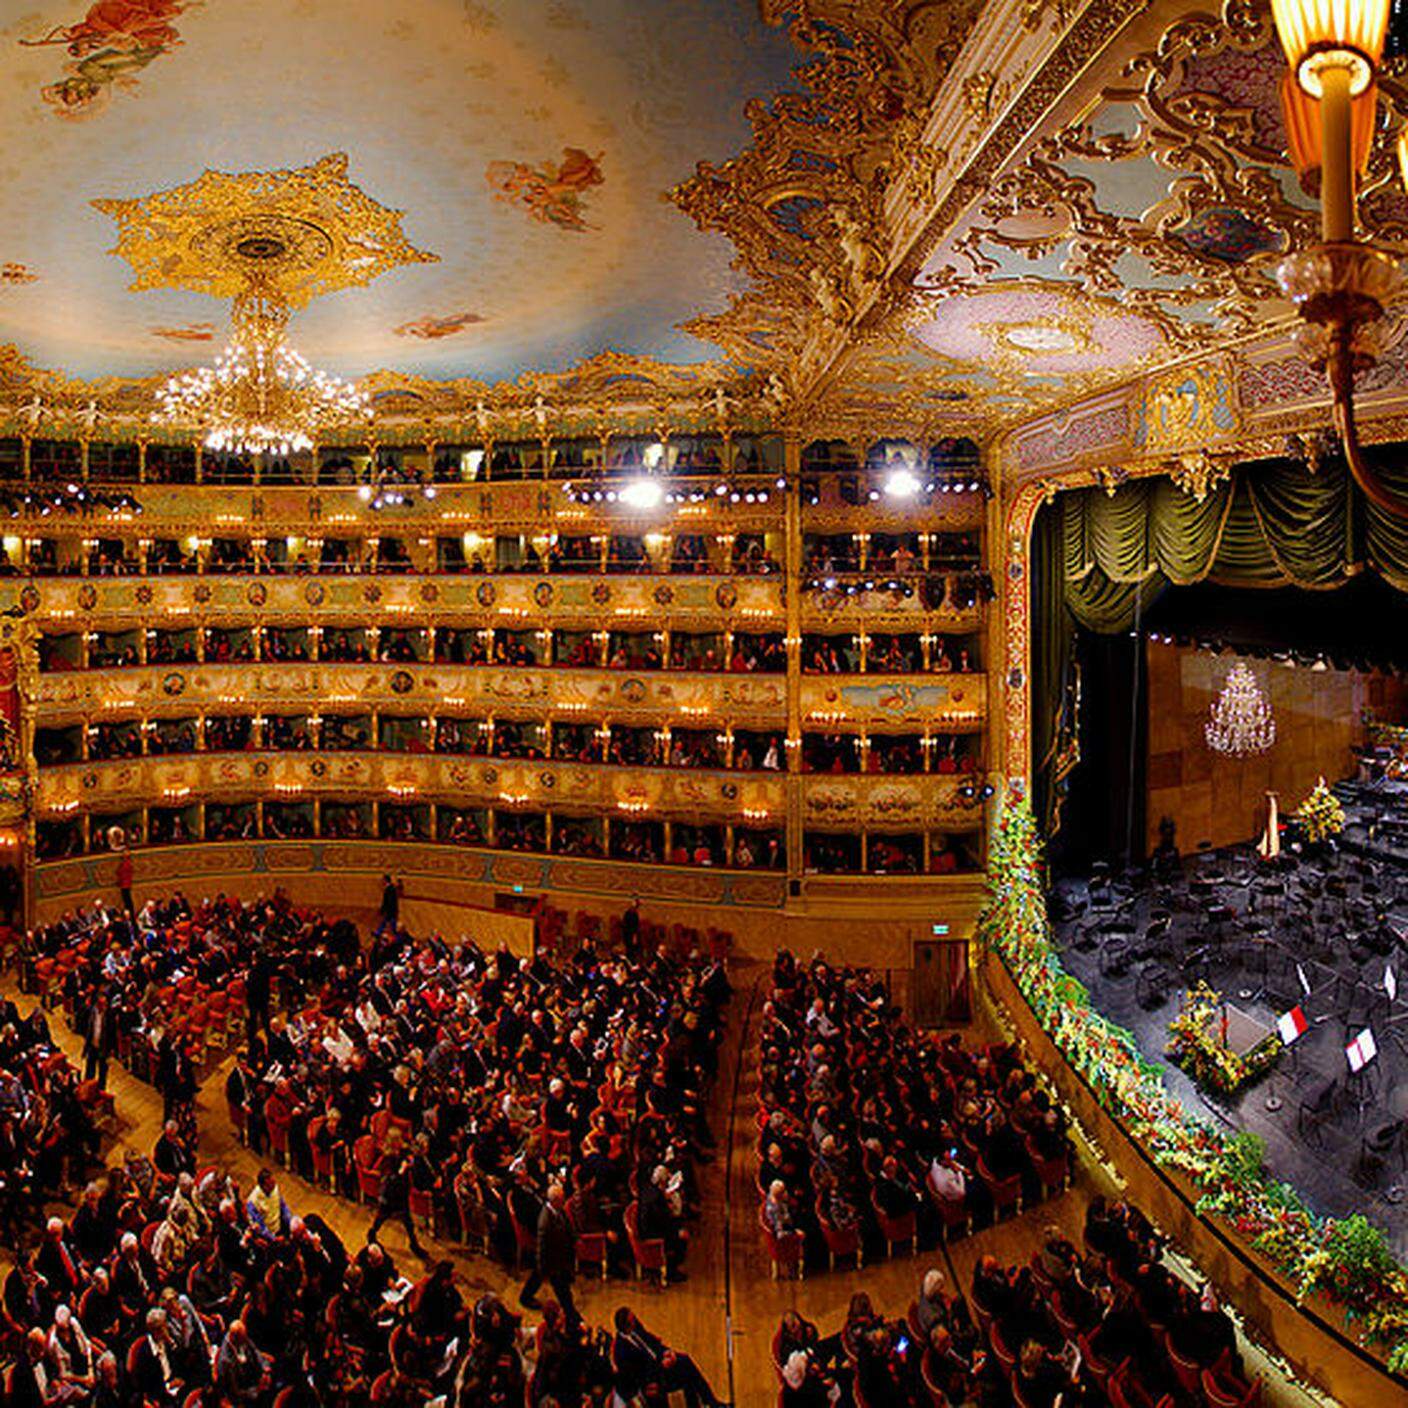 Teatro La Fenice di Venezia, Wikipedia - ©Youflavio